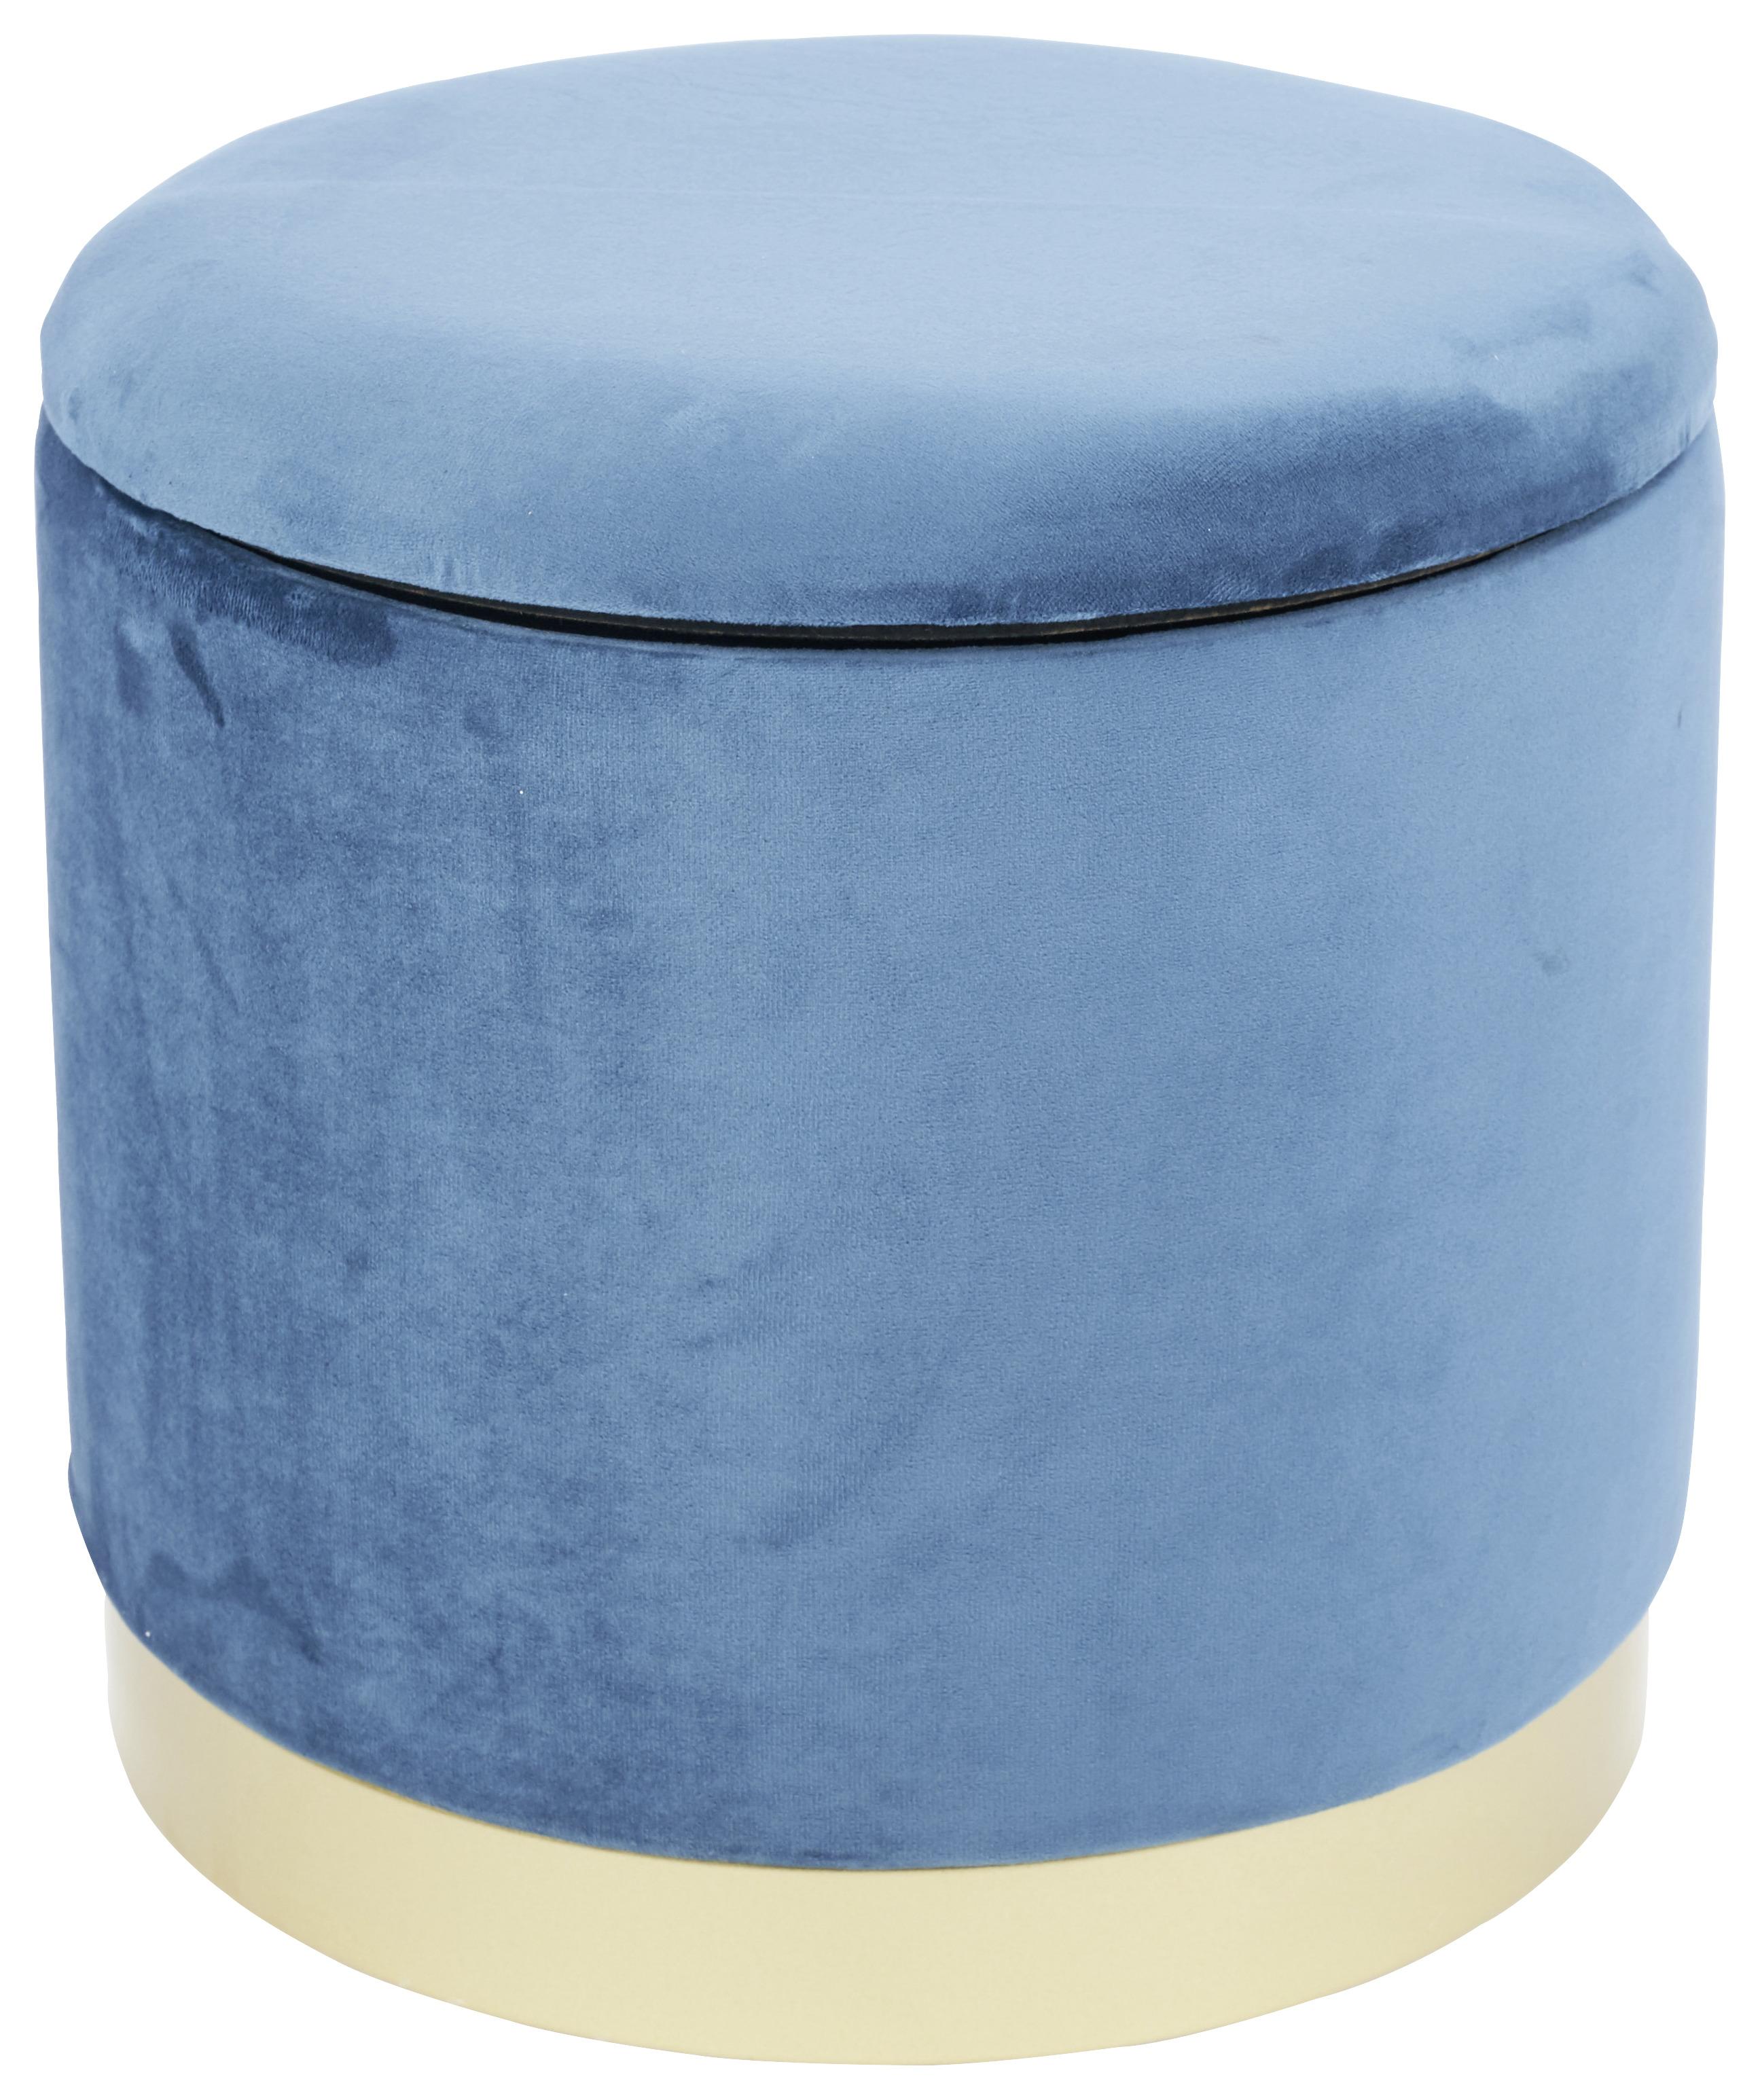 Hocker Velvet Textil Blau Sitz Gepolstert H: 35 cm Rund - Blau/Goldfarben, MODERN, Holzwerkstoff/Textil (35/35/35cm)